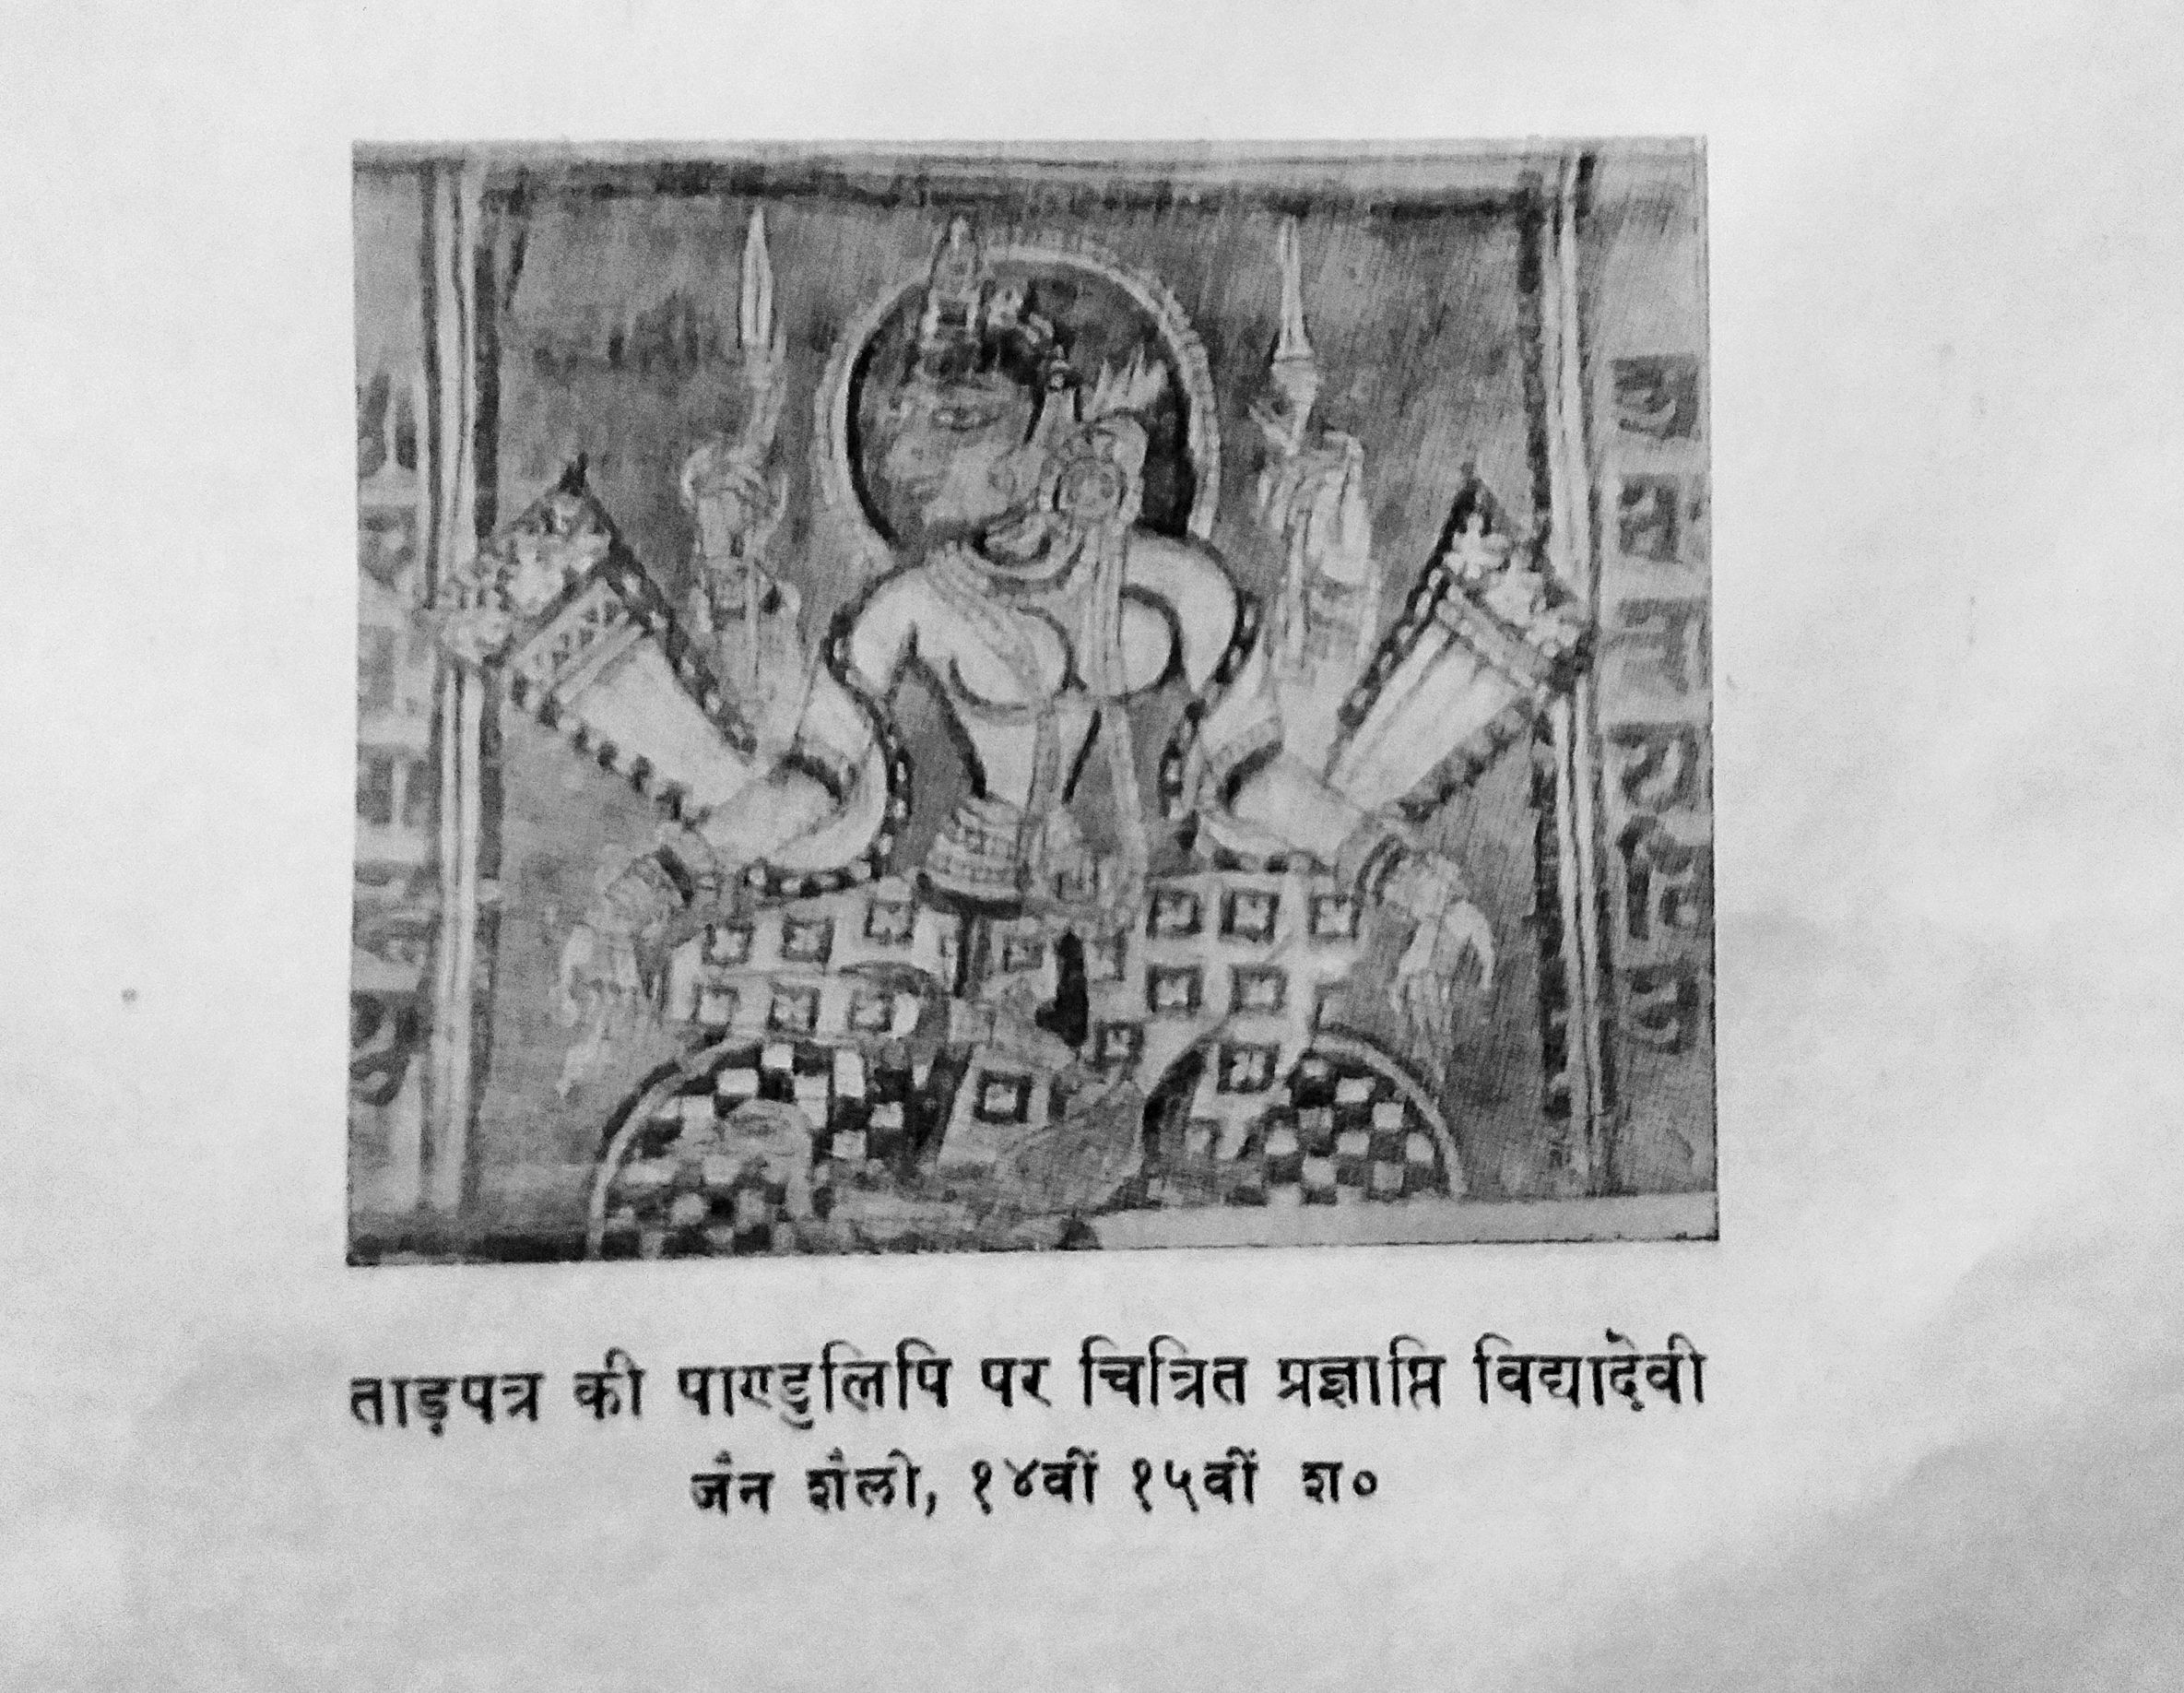 विद्या देवी, ताड़ पत्र पर जैन चित्र शैली, 14 वीं से 15 वीं शताब्दी : साभार भारतीय चित्रकला, लेखक : वाचस्पति गैरोला  